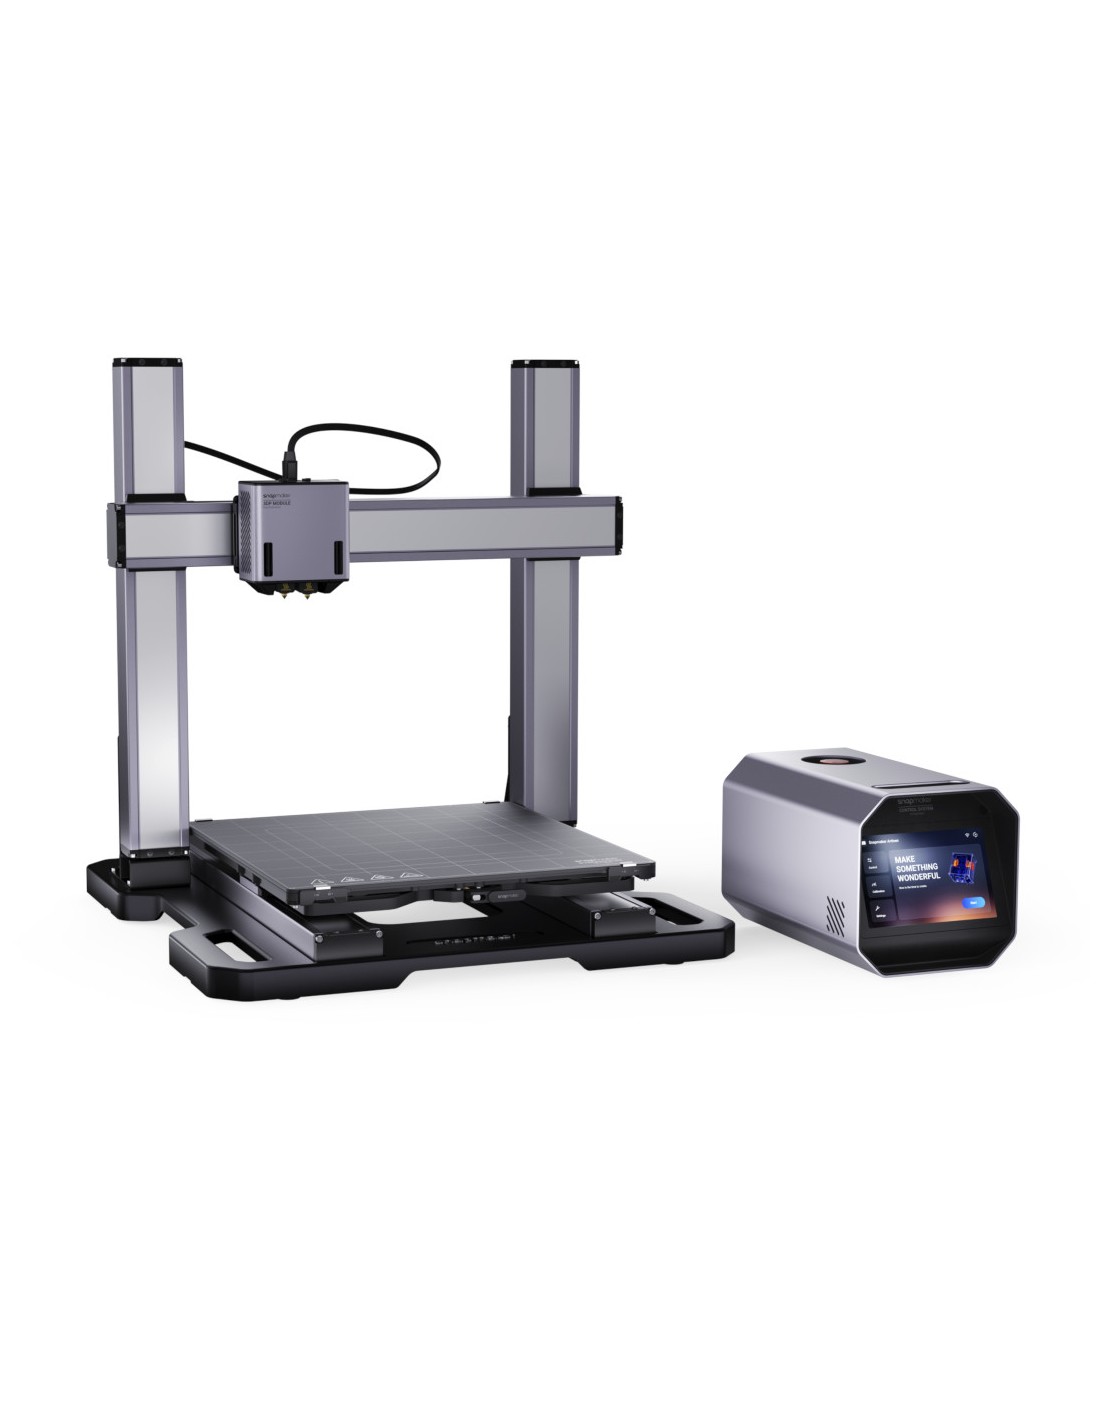 Snapmaker Artisan - 3D printer